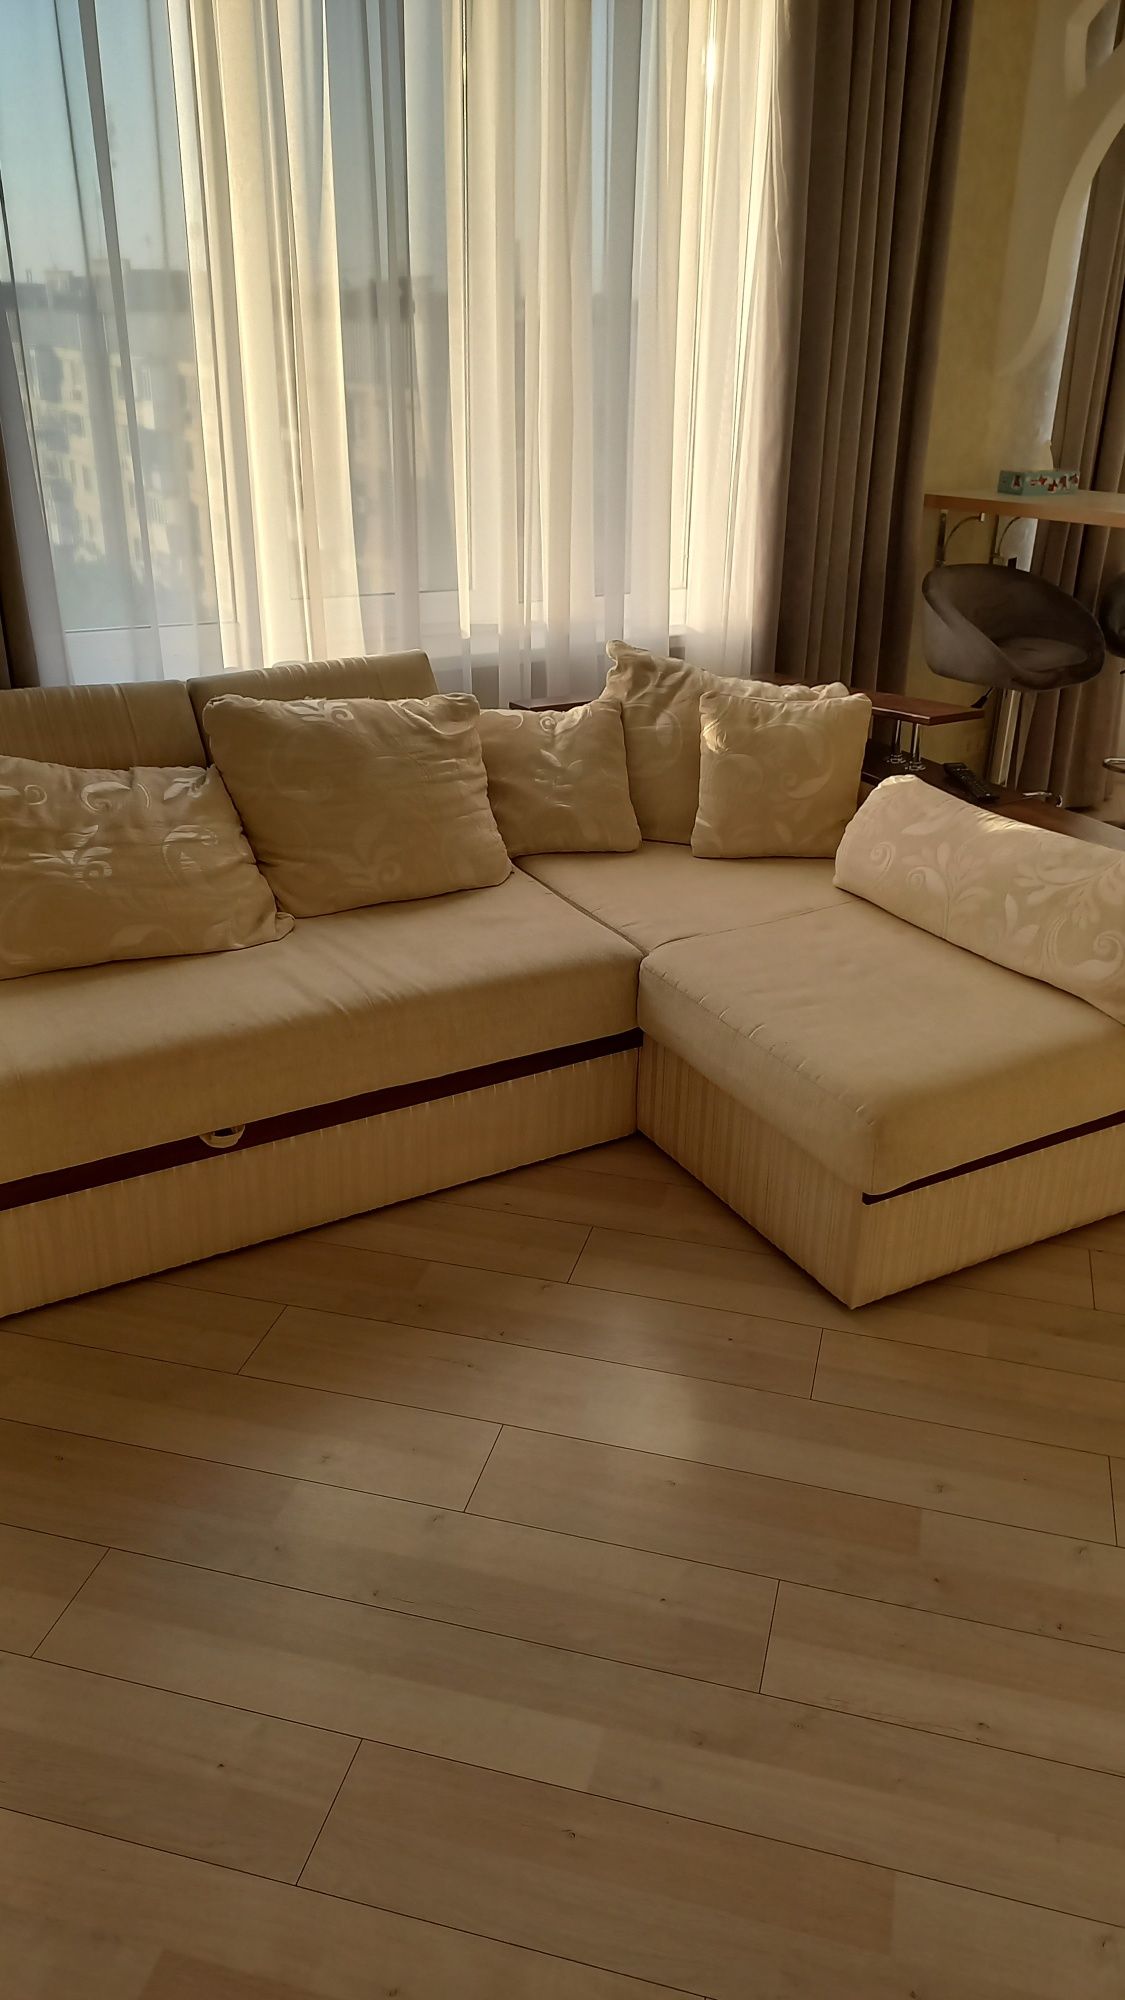 Продается квартира в ЖК Лермонтово с мебелью и бытовой техникой.